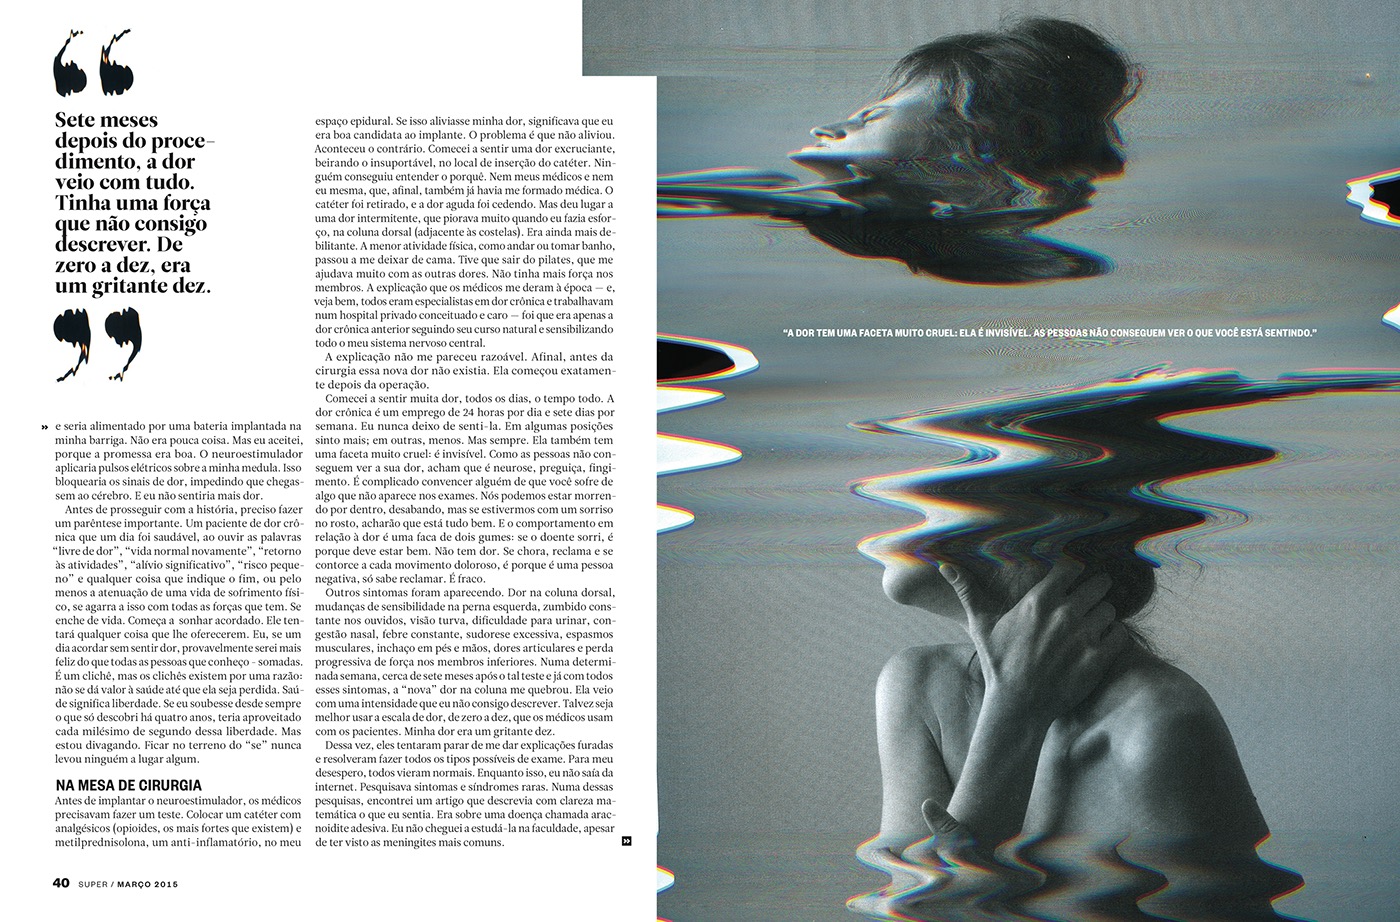 Glitch scanner art magazine Magazine design